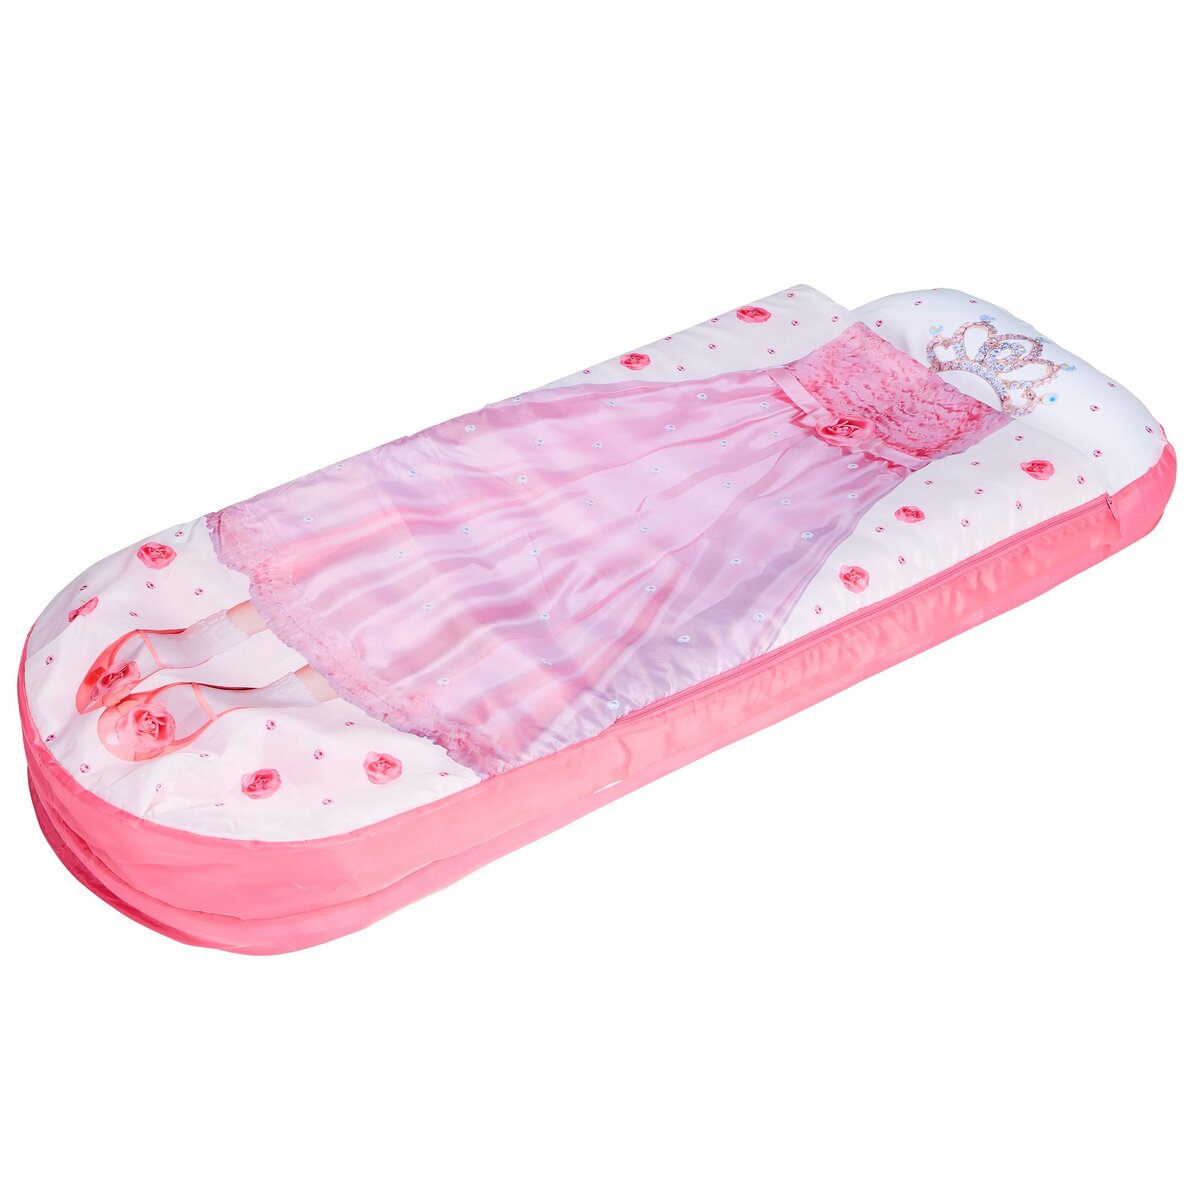 Je suis une princesse - Lit junior ReadyBed - lit gonflable pour enfants  avec sac de couchage intégré pas cher 